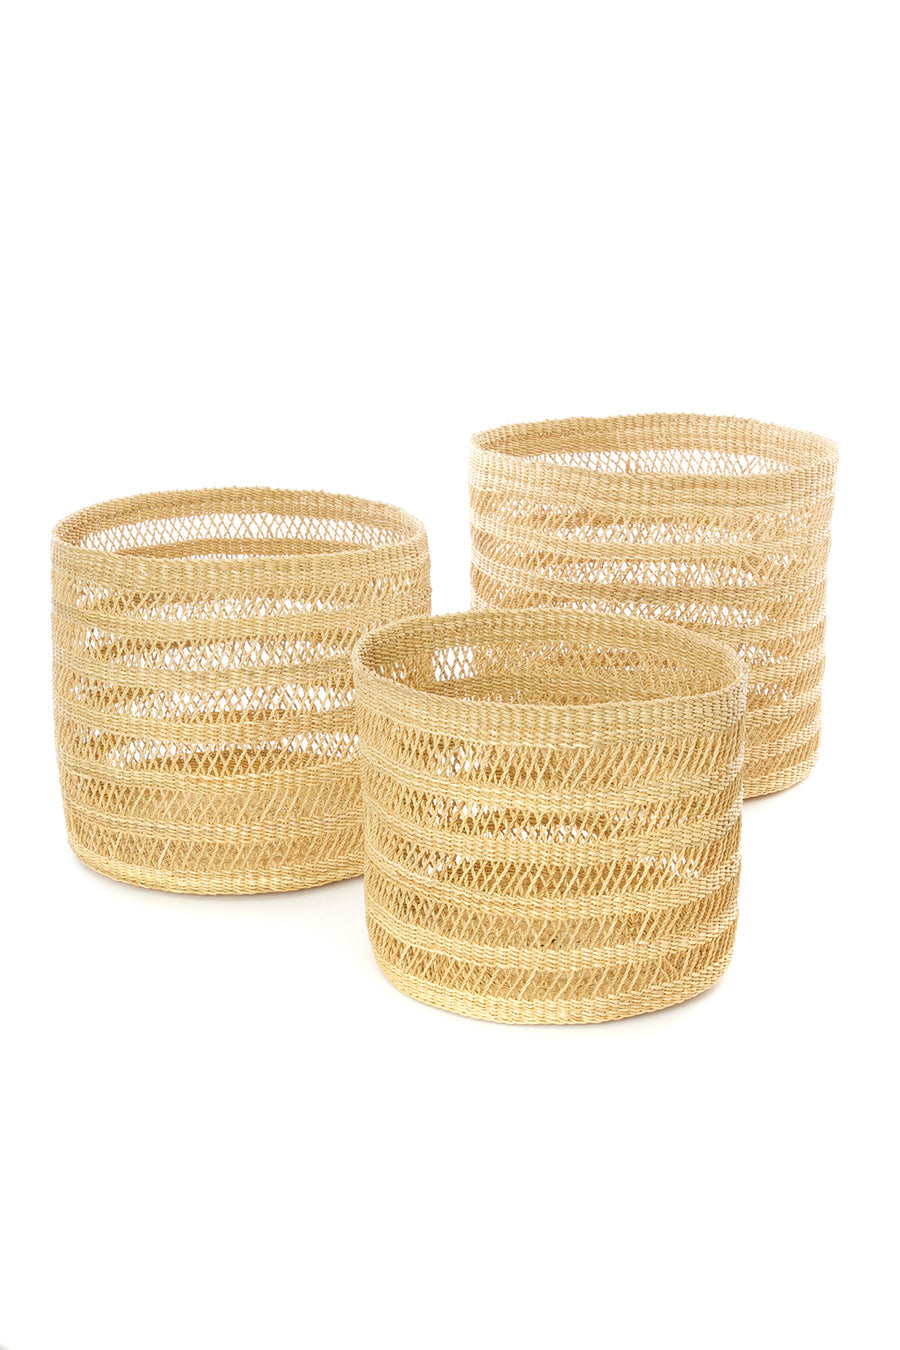 Lace Weave Basket Bins from Ghana